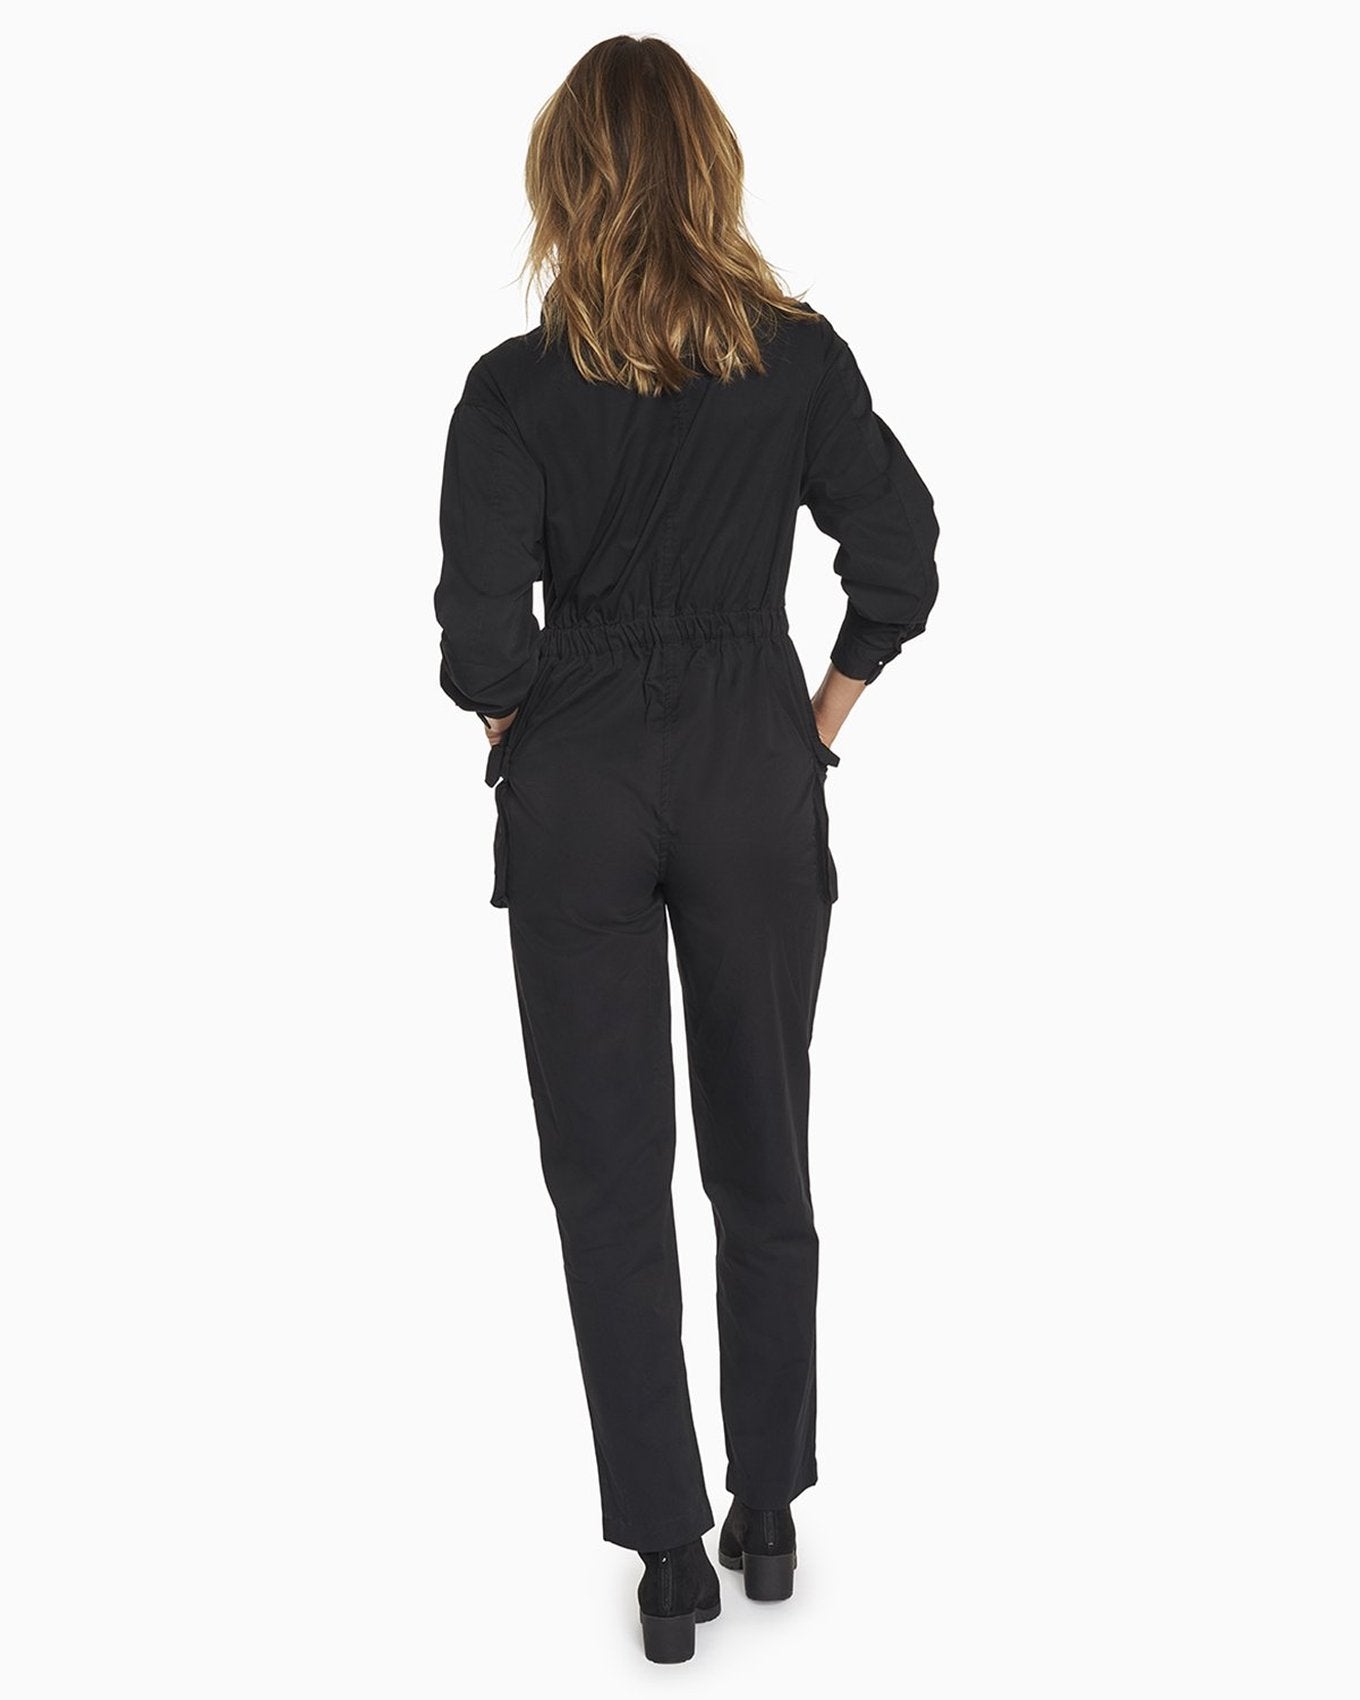 YesAnd Organic Zip Front Jumpsuit Jumpsuit in color Jet Black and shape jumpsuit